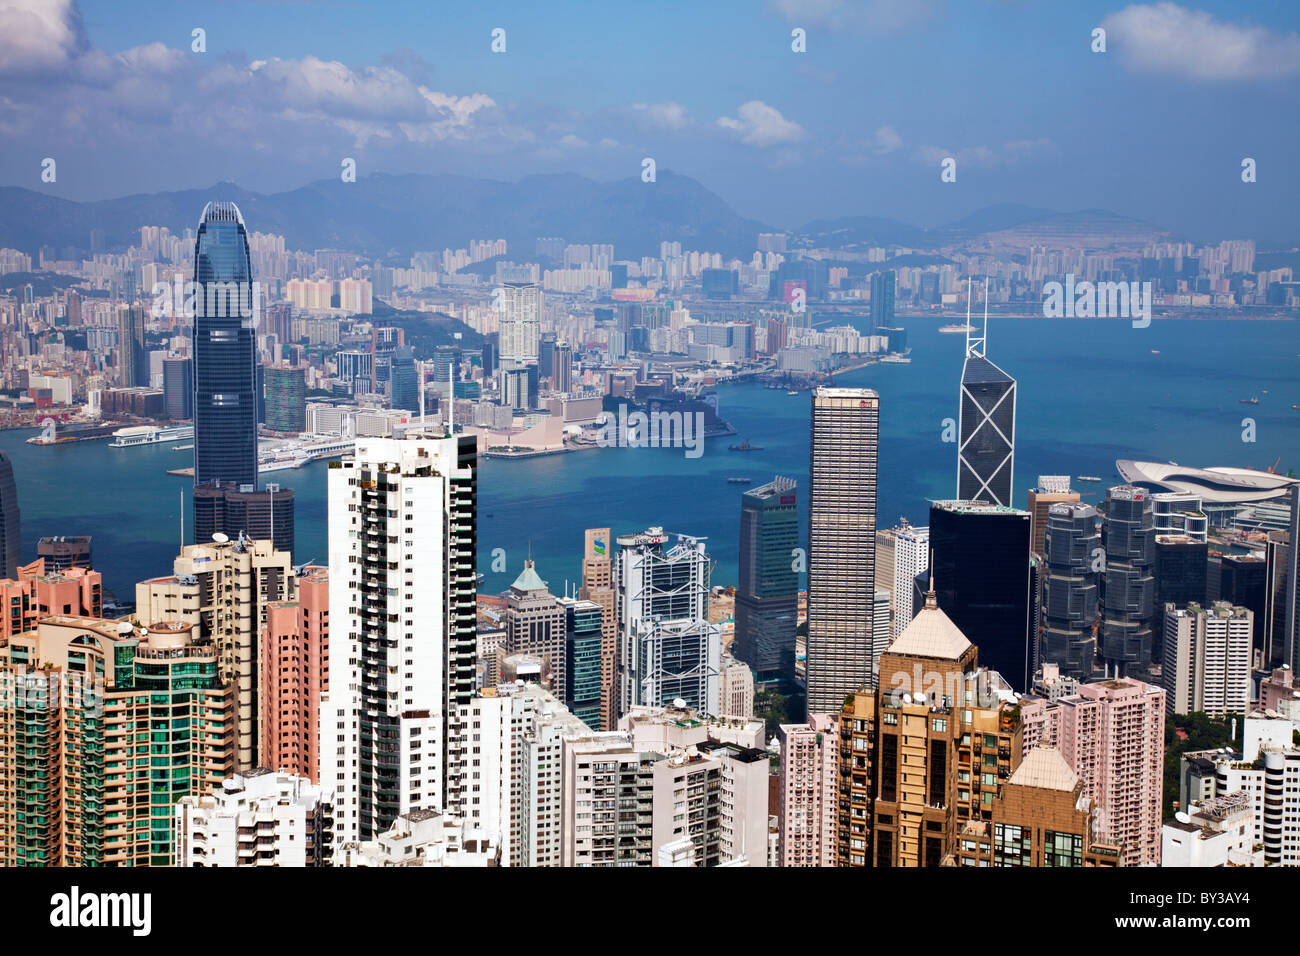 Die erstaunliche Hong Kong Skyline wie gesehen von oben in den Tag. Stadtbild von Hochhäusern & Kowloon Hong Kong Victoria Harbour Stockfoto